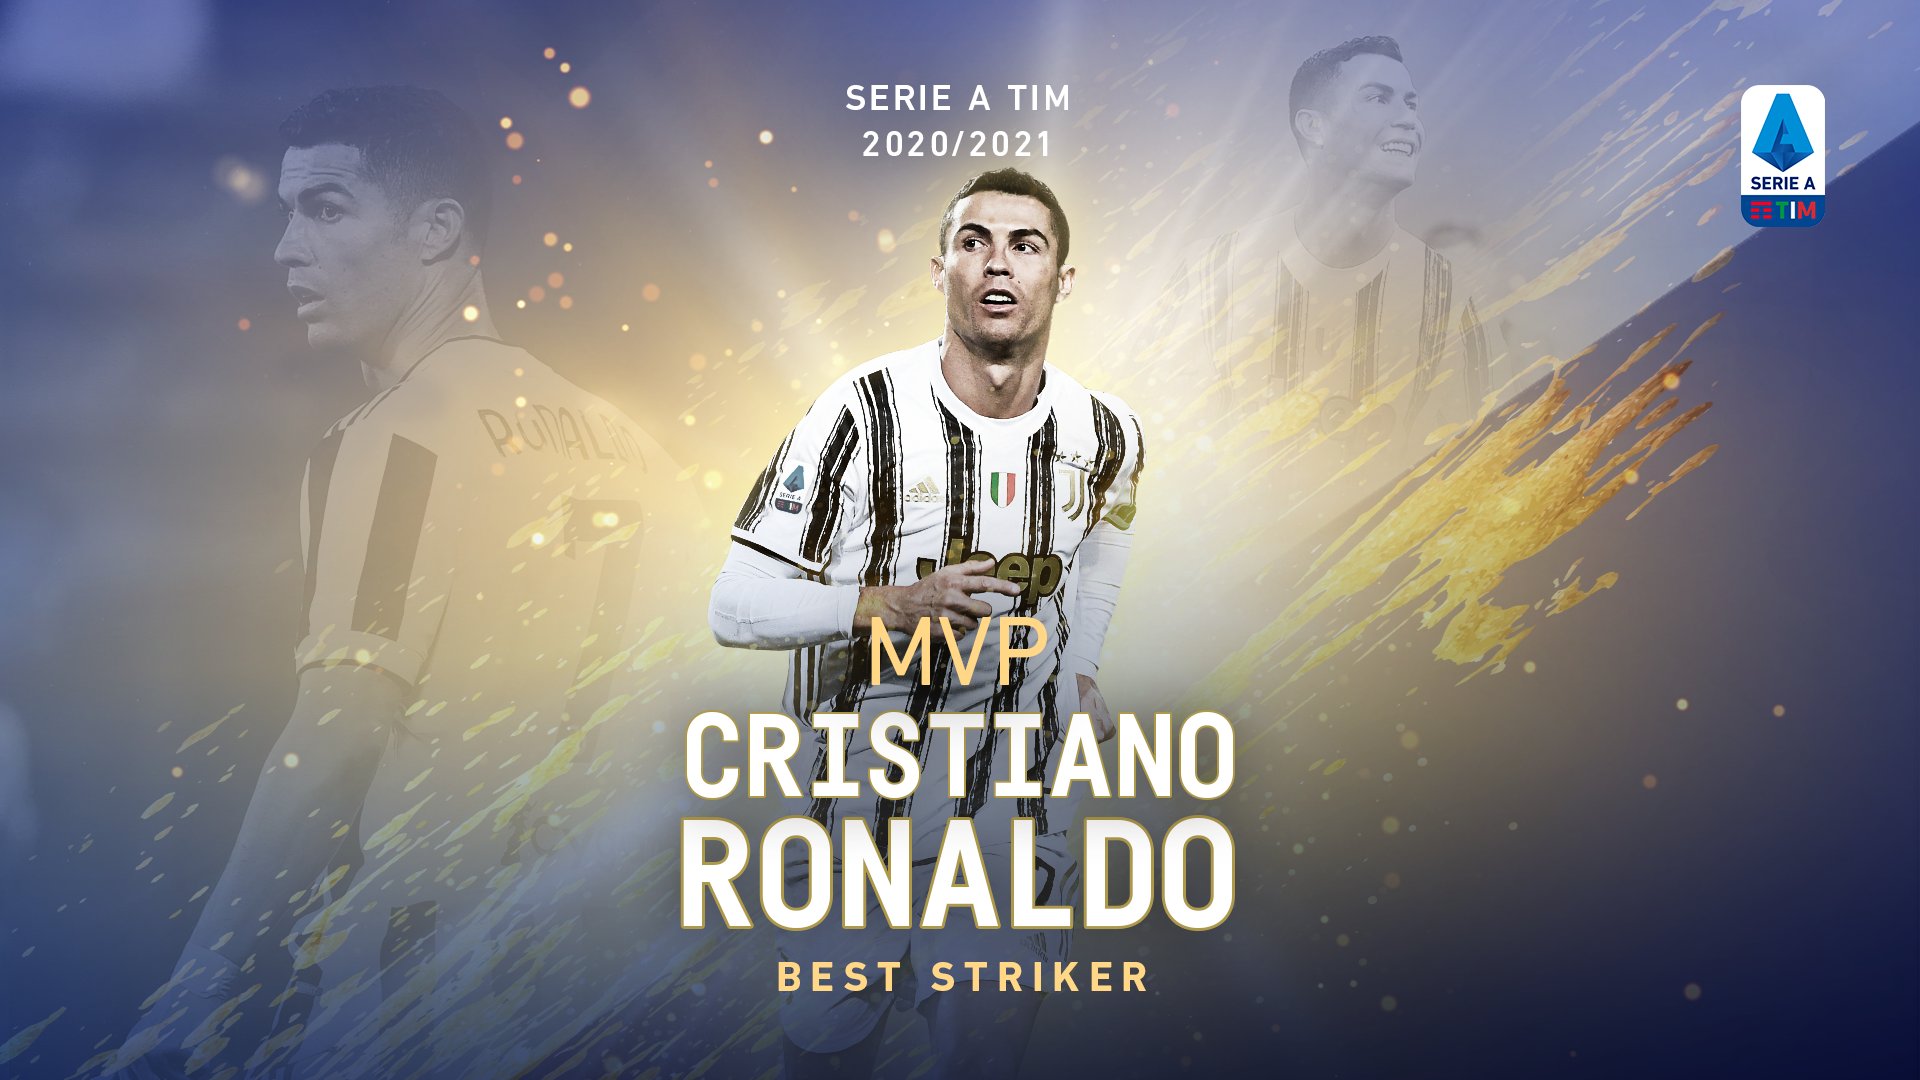 Officiel : Cristiano Ronaldo est élu meilleur attaquant de cette saison 2020/21 de Serie A !